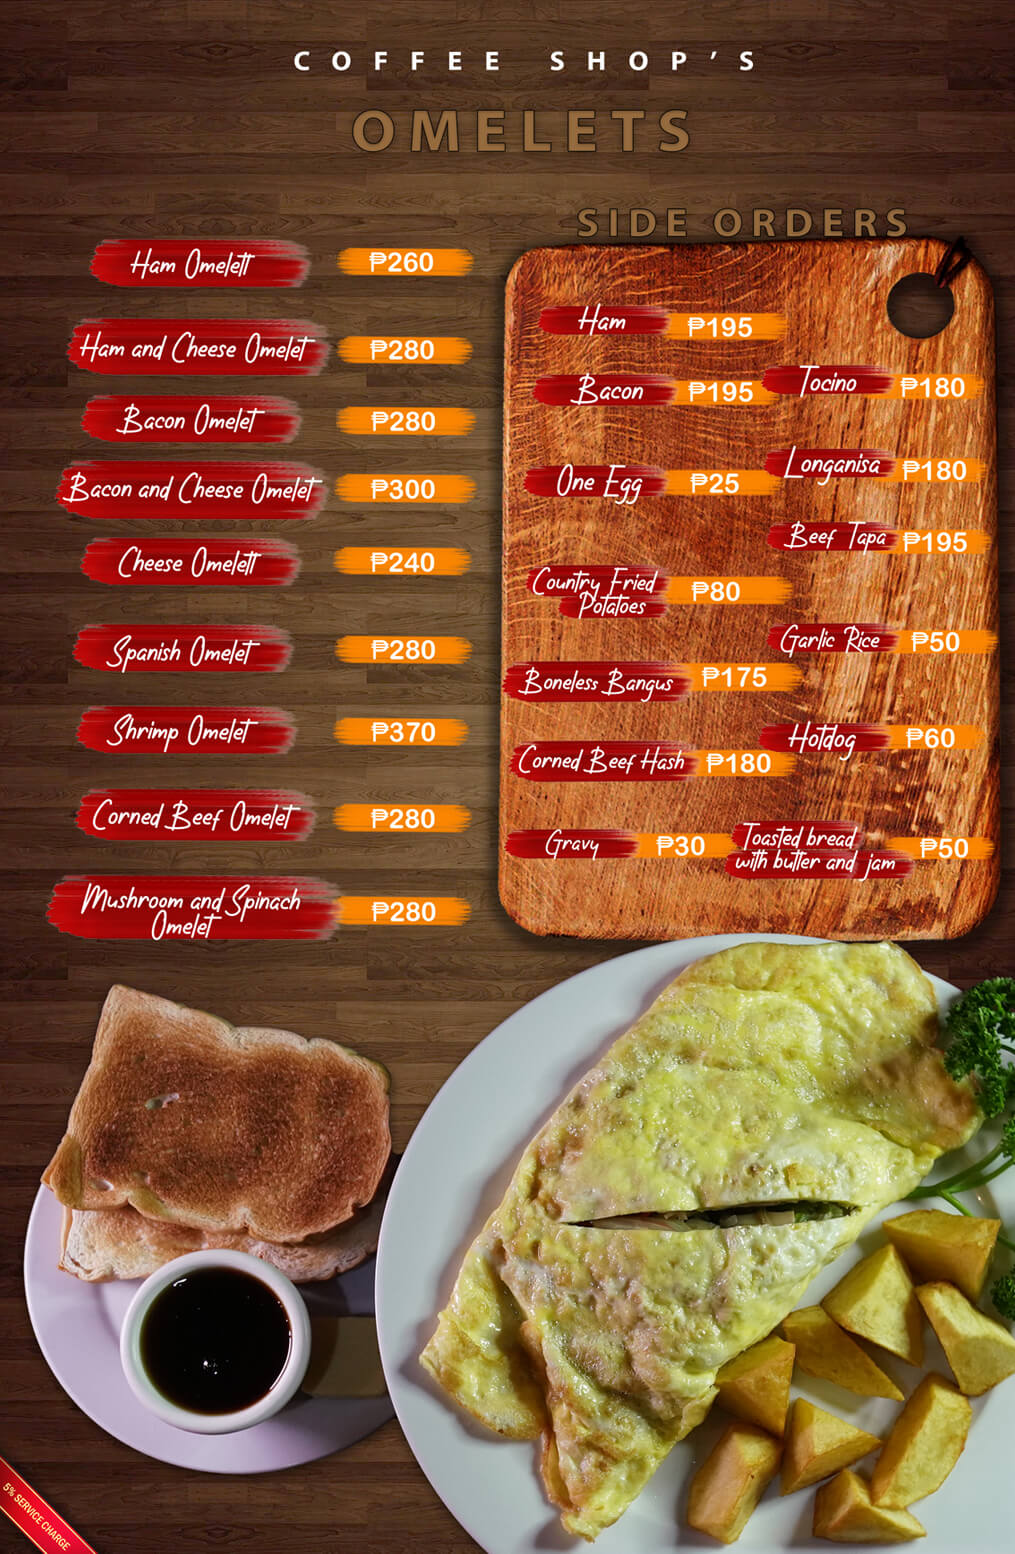 Omelet Side Orders